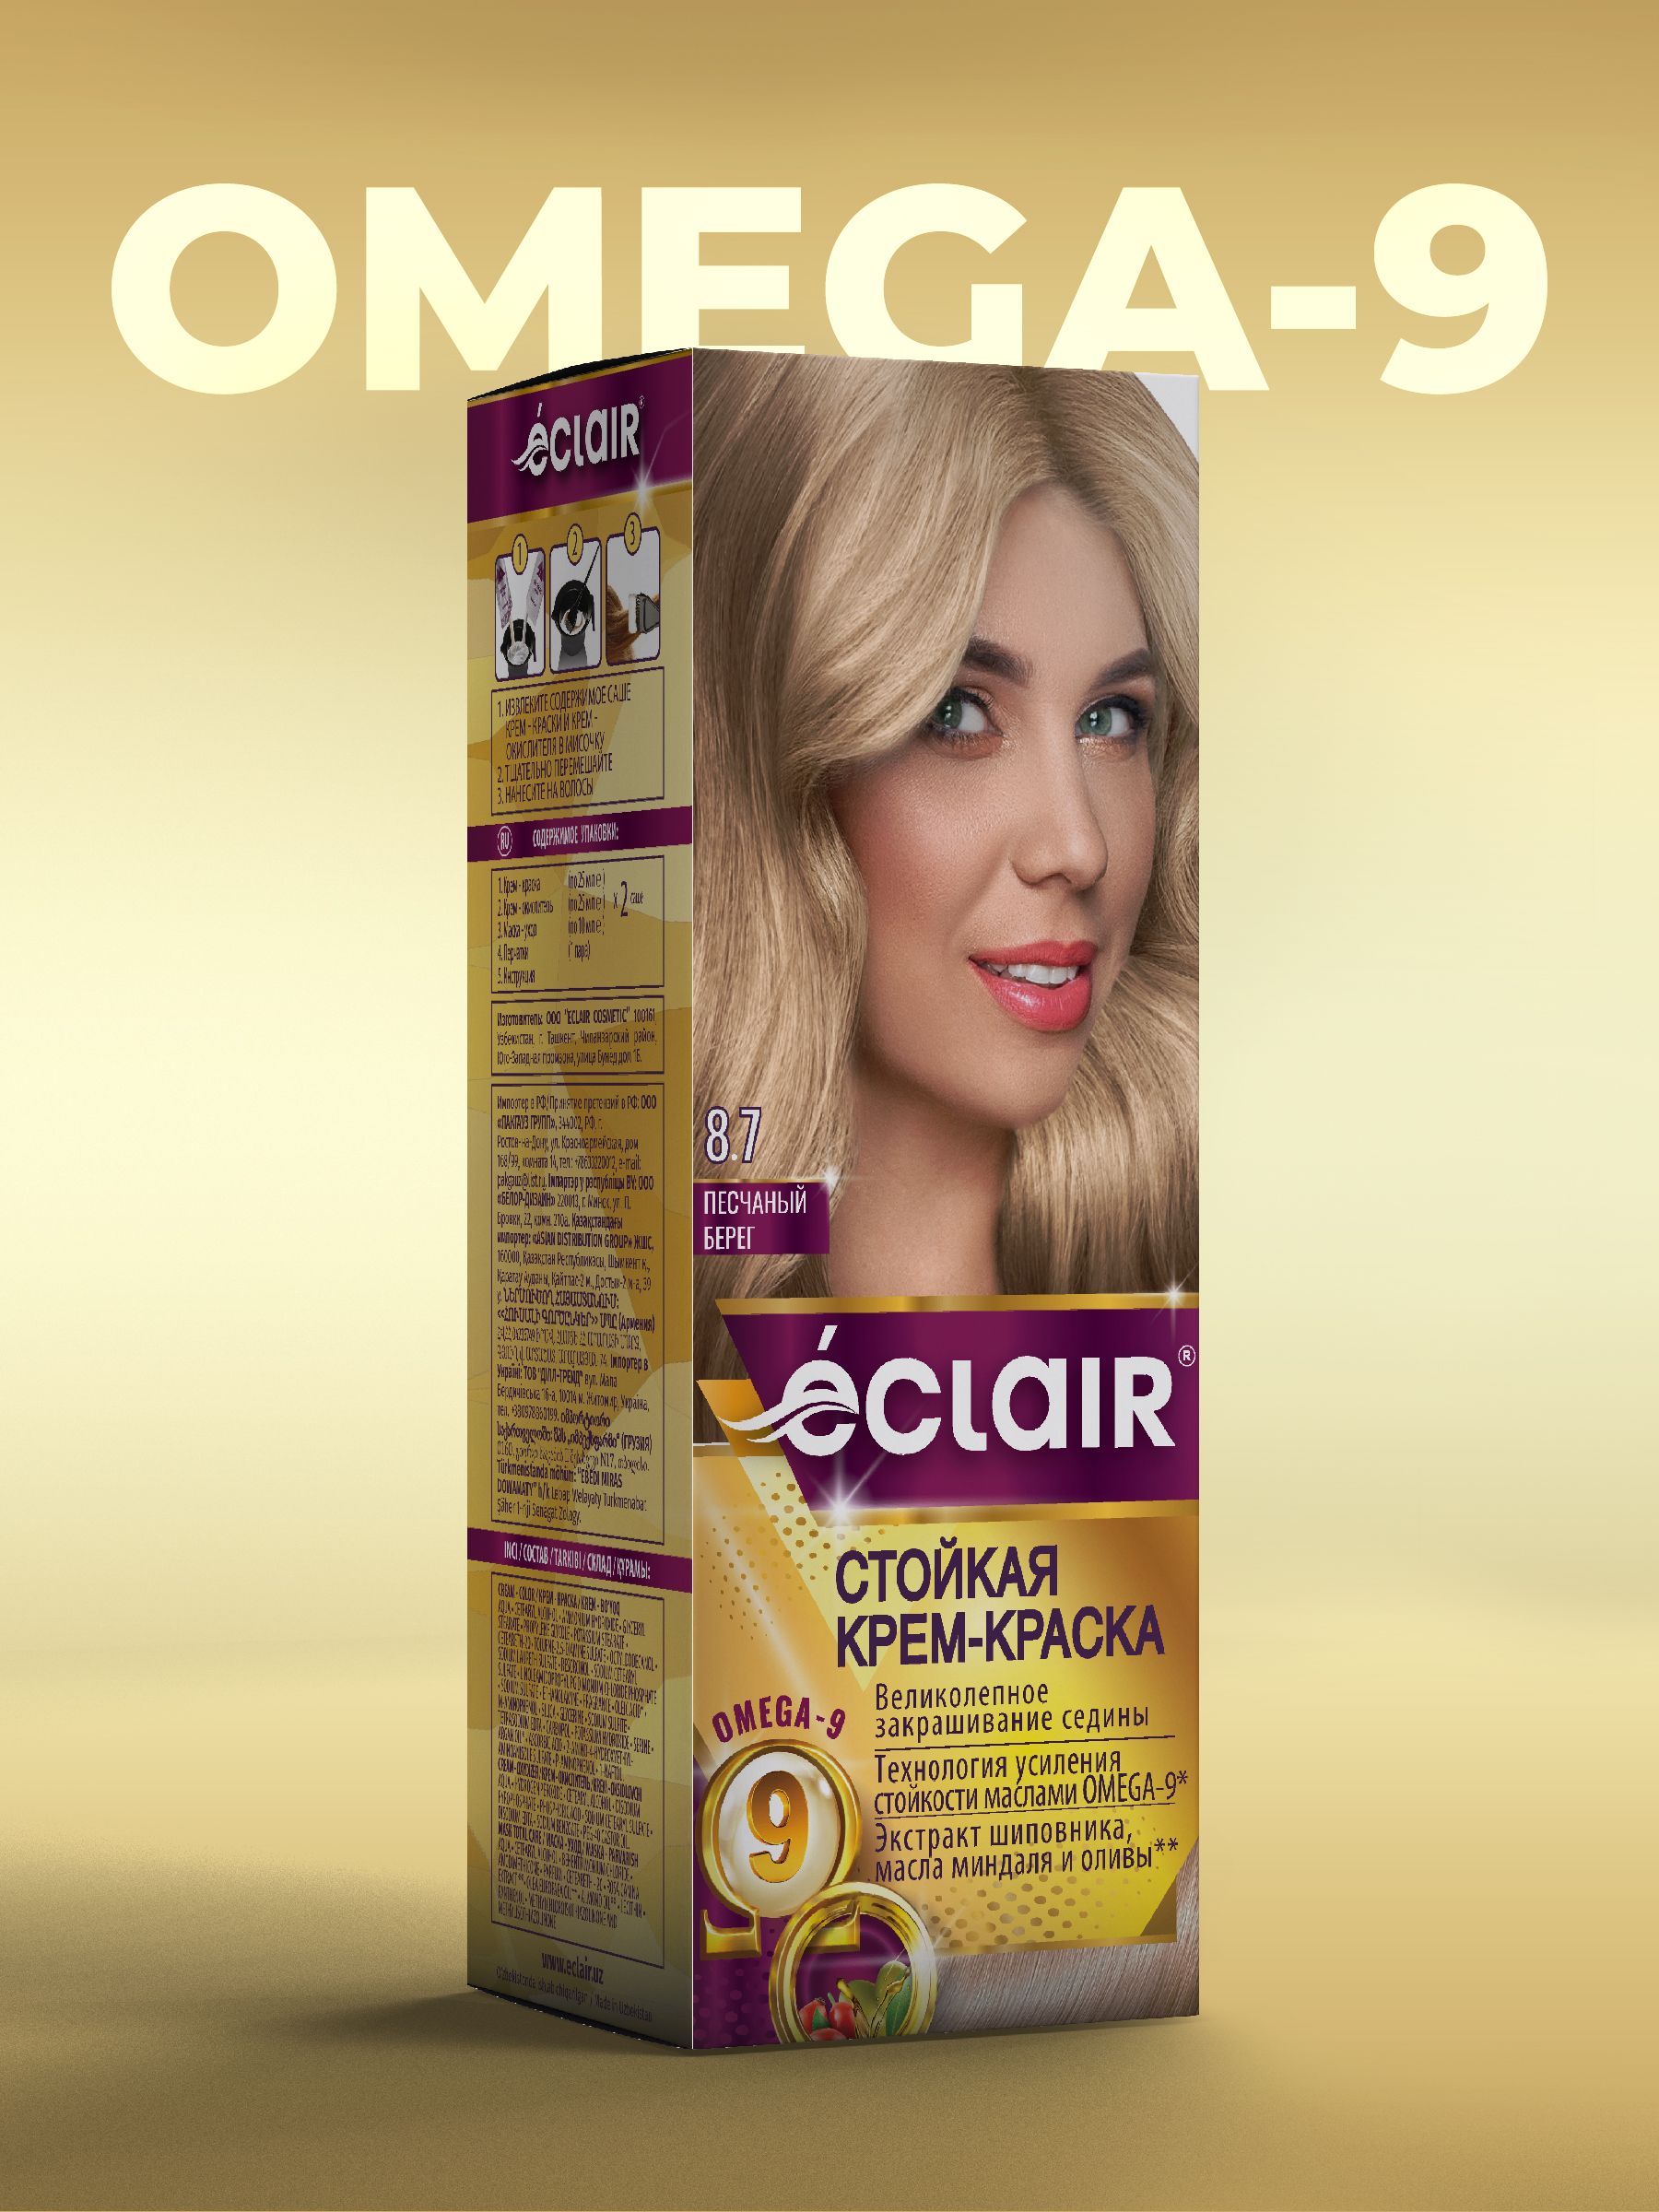 Краска для волос Garnier (Гарньер) Color Naturals Creme, тон 8.1 - Песчаный берег